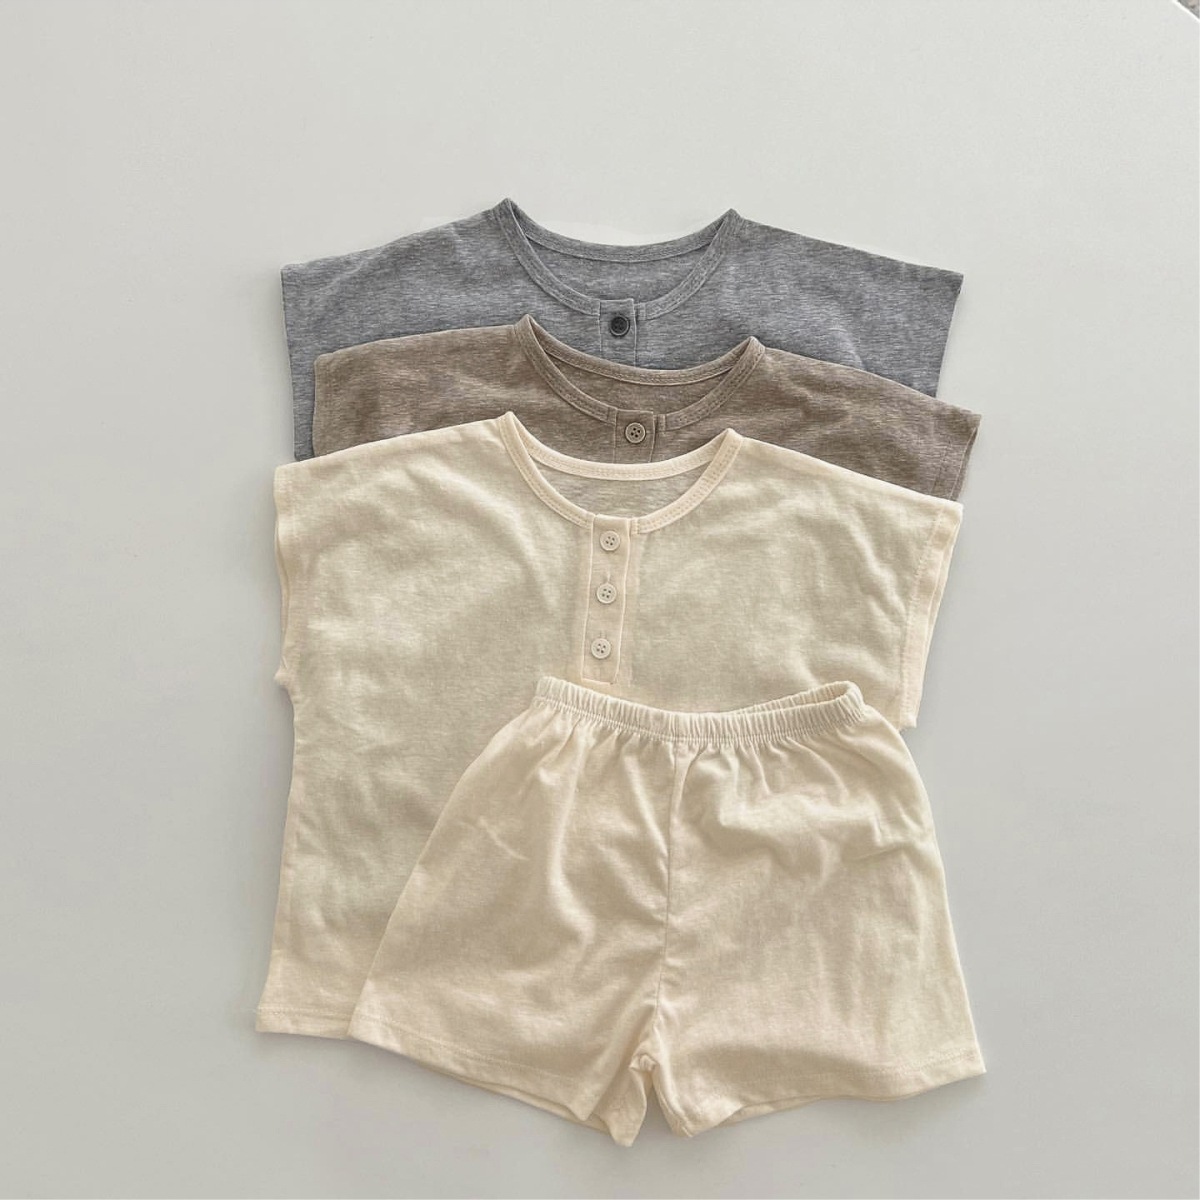 婴童夏款柔软透气棉套装新生儿衣服短袖T恤+短裤套装婴儿两件套